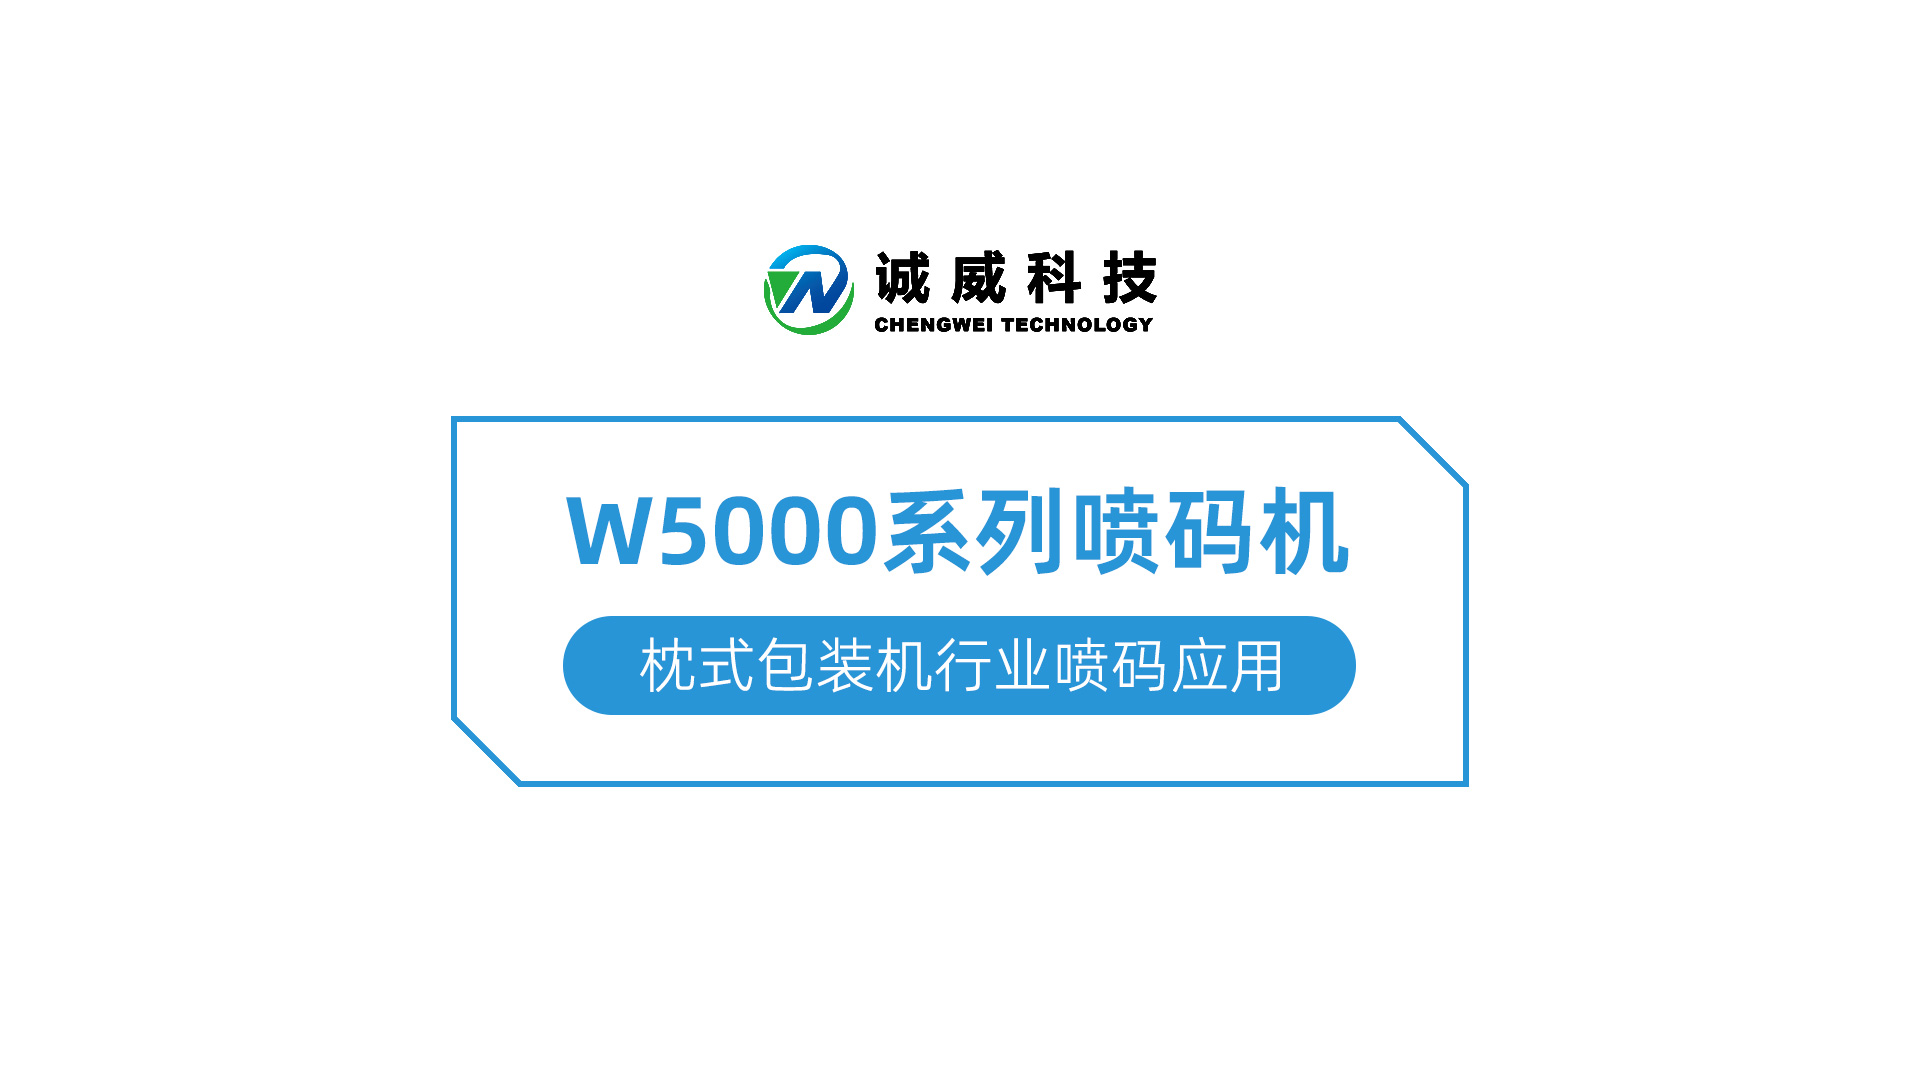 W5000系列喷码机-枕式包装机行业喷码应用.jpg